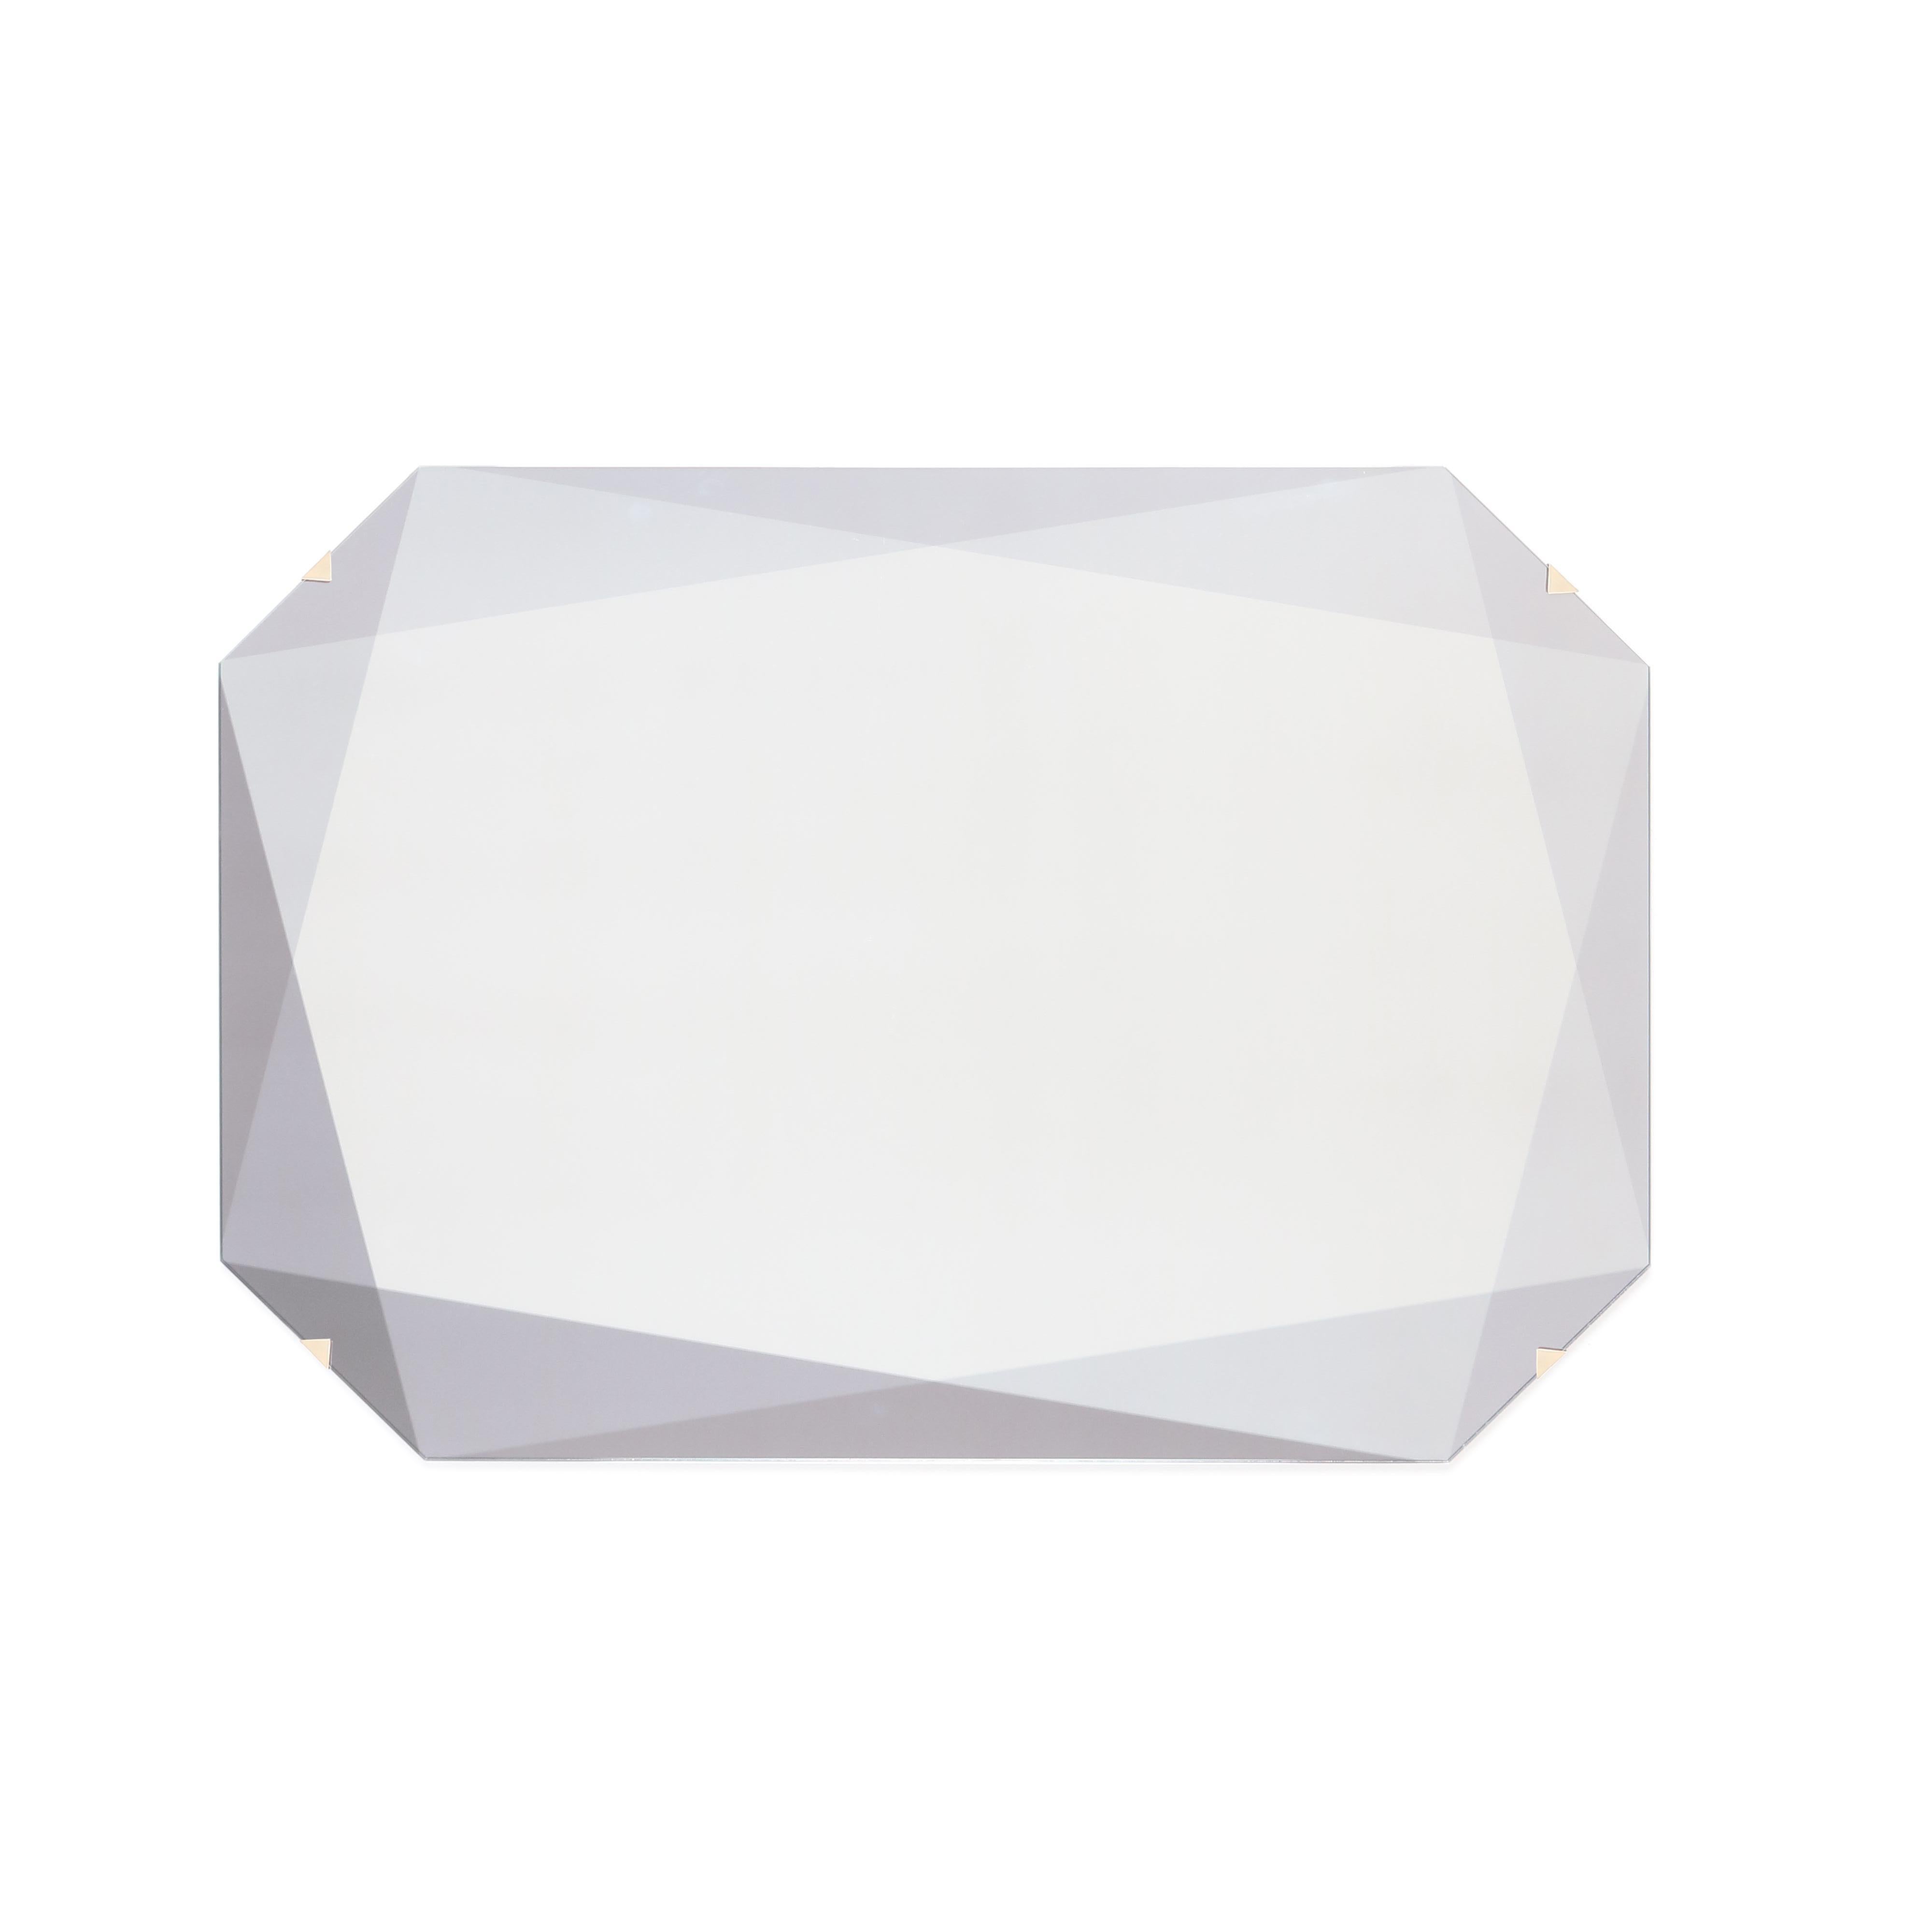 Nach dem Erfolg unserer Edelsteintische erforscht unsere neue Spiegelkollektion die Facetten der Edelsteine durch Farbschichten und unterschiedliche Transparenz. Dieser smaragdförmige Edelsteinspiegel besteht aus eisenarmem klarem/eisenarmem